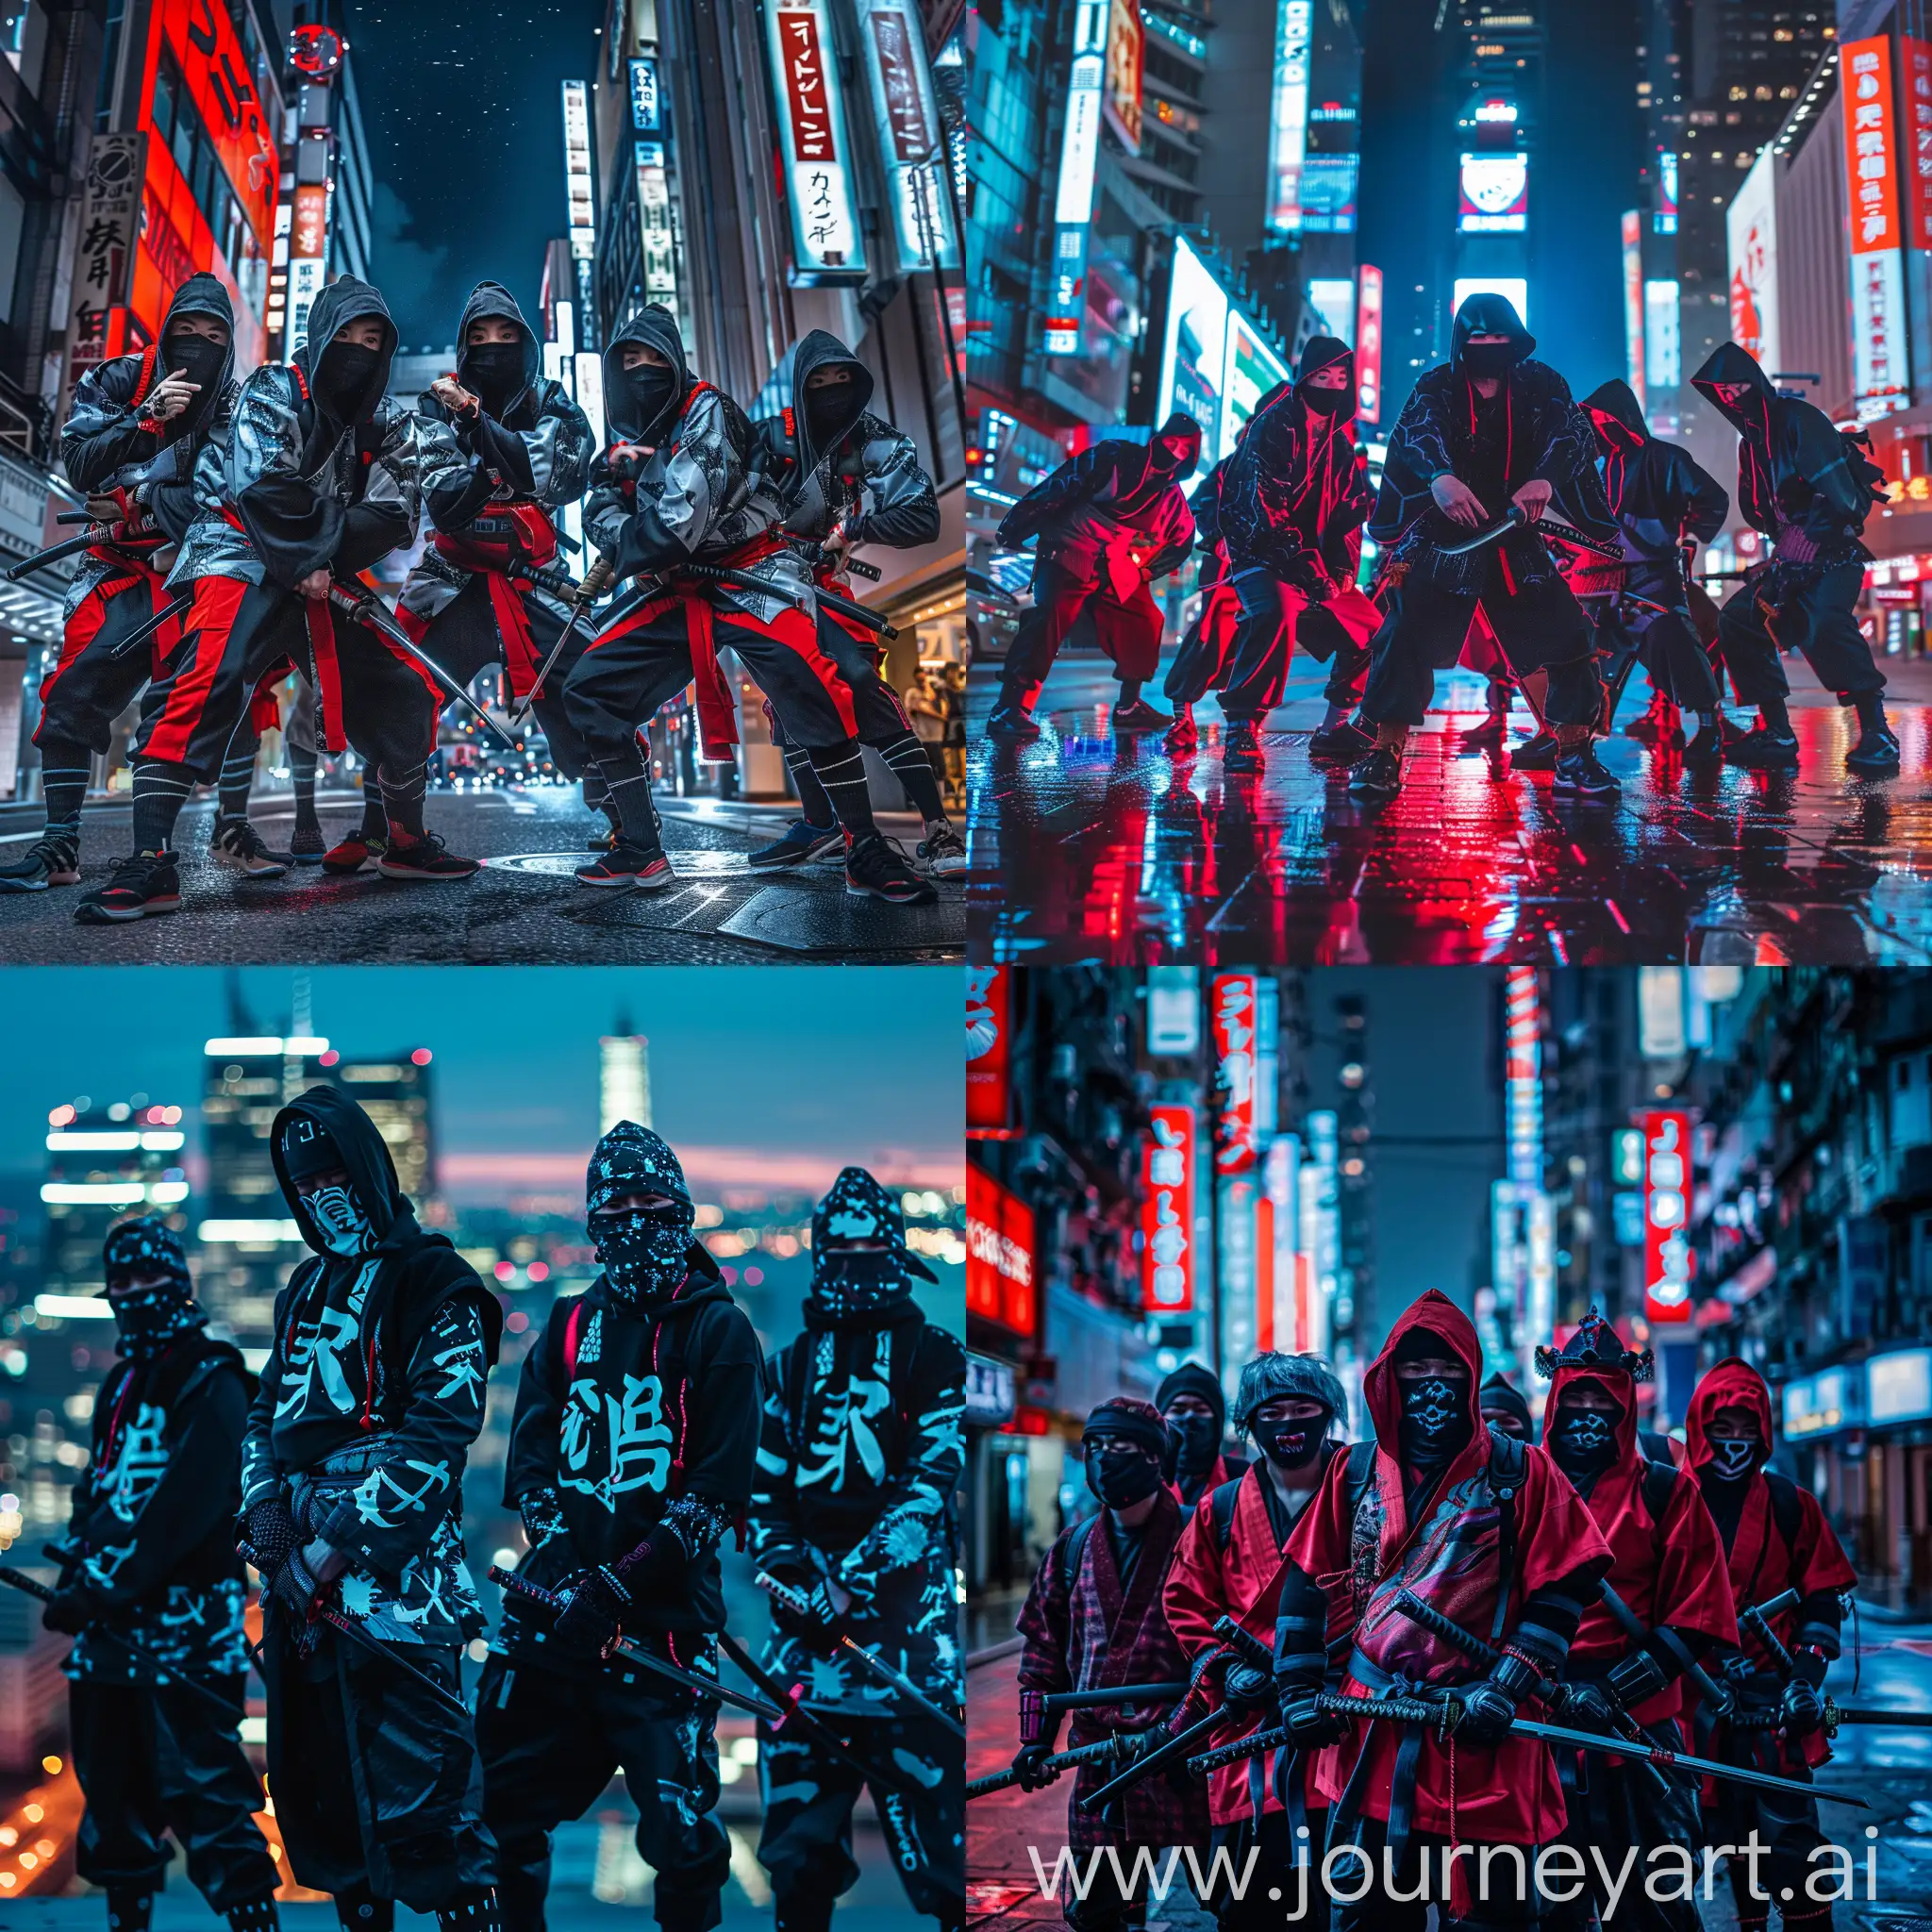 Крутая уличная банда, одетая в стиле современных городских паркур самураев, на фоне ночного городского пейзажа